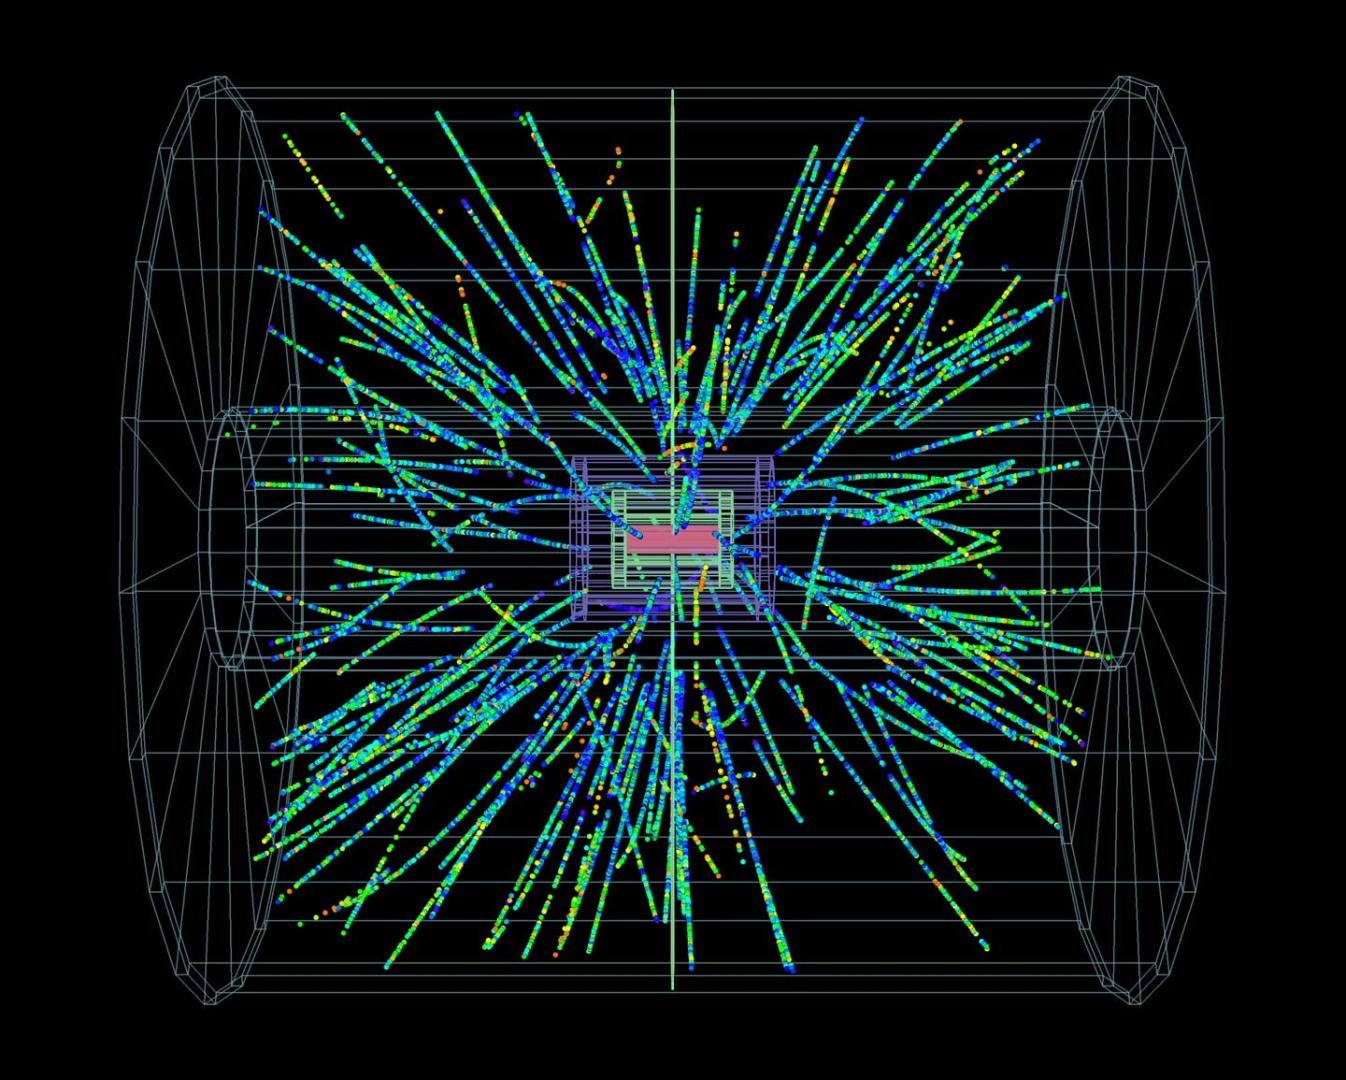 Premières collisions LHC de 2013 : protons et ions plomb